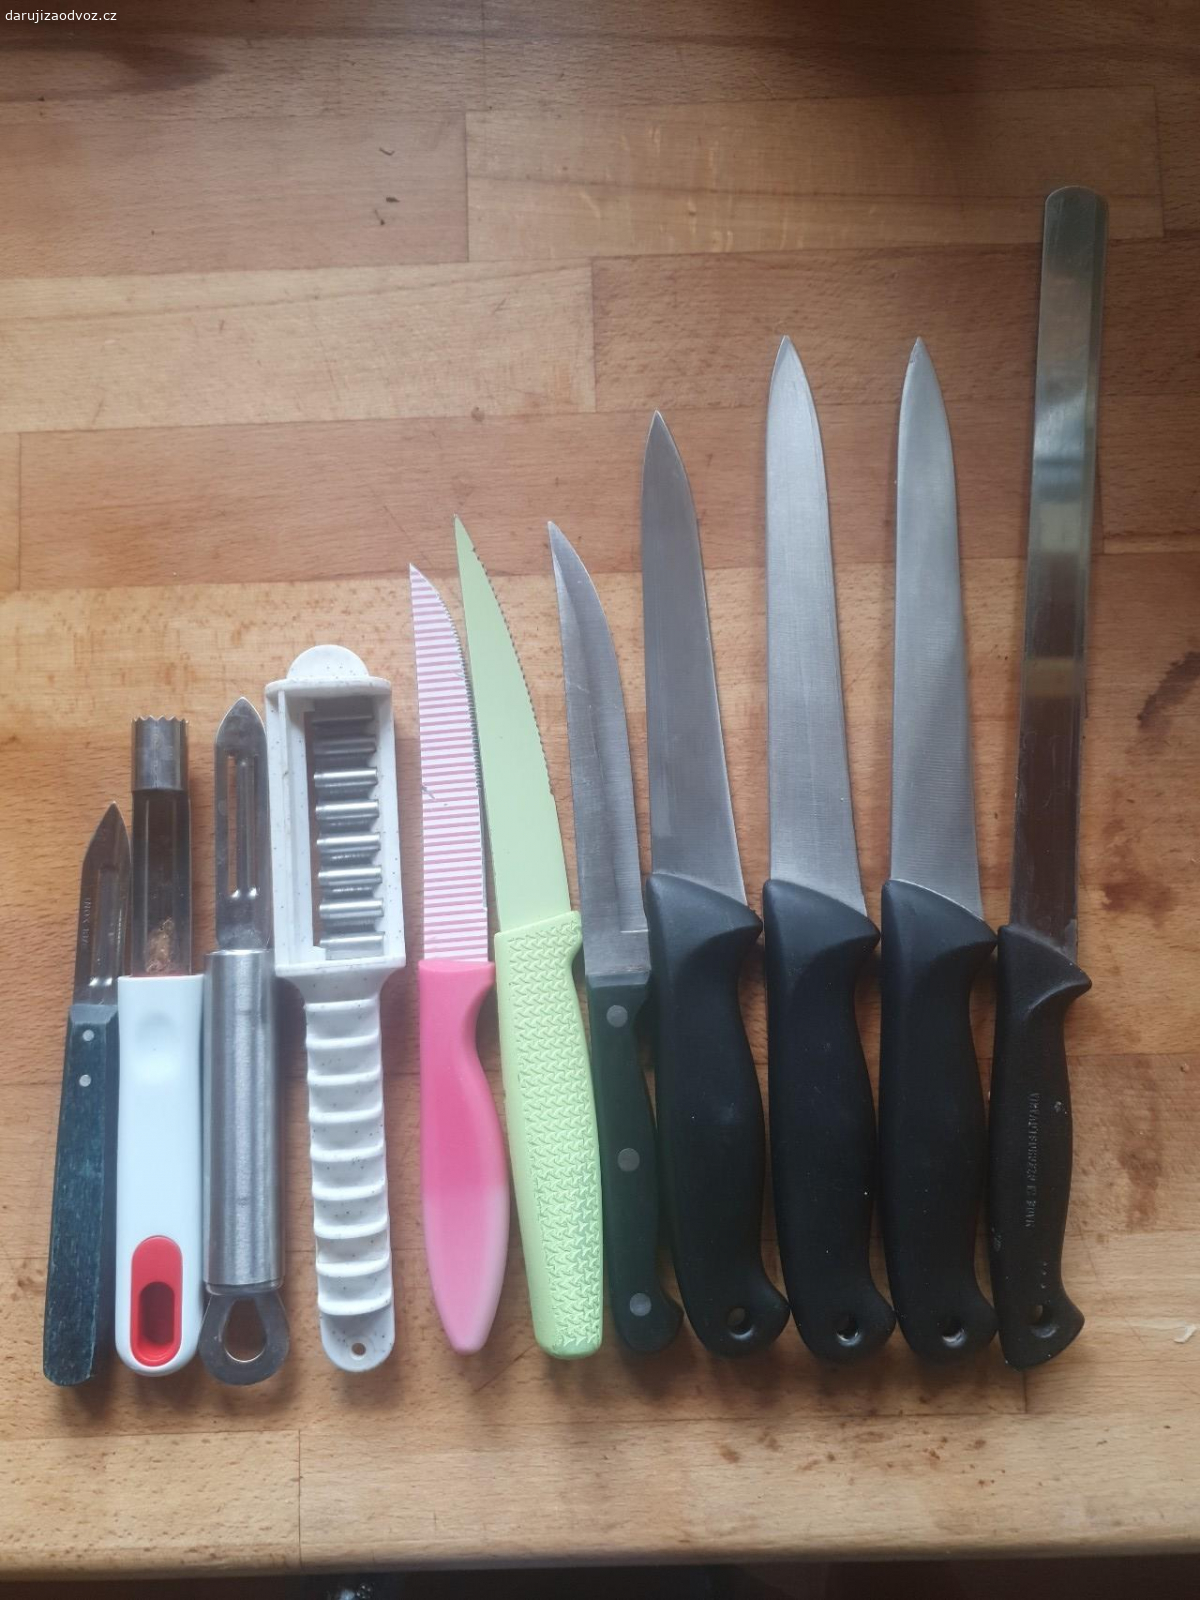 Nože, škrabky. Darujeme přebytečné nože a škrabky. Škrabka vlevo je cca 15 cm dlouhá. 
Možnost předání v Praze nebo v Českém Brodě.